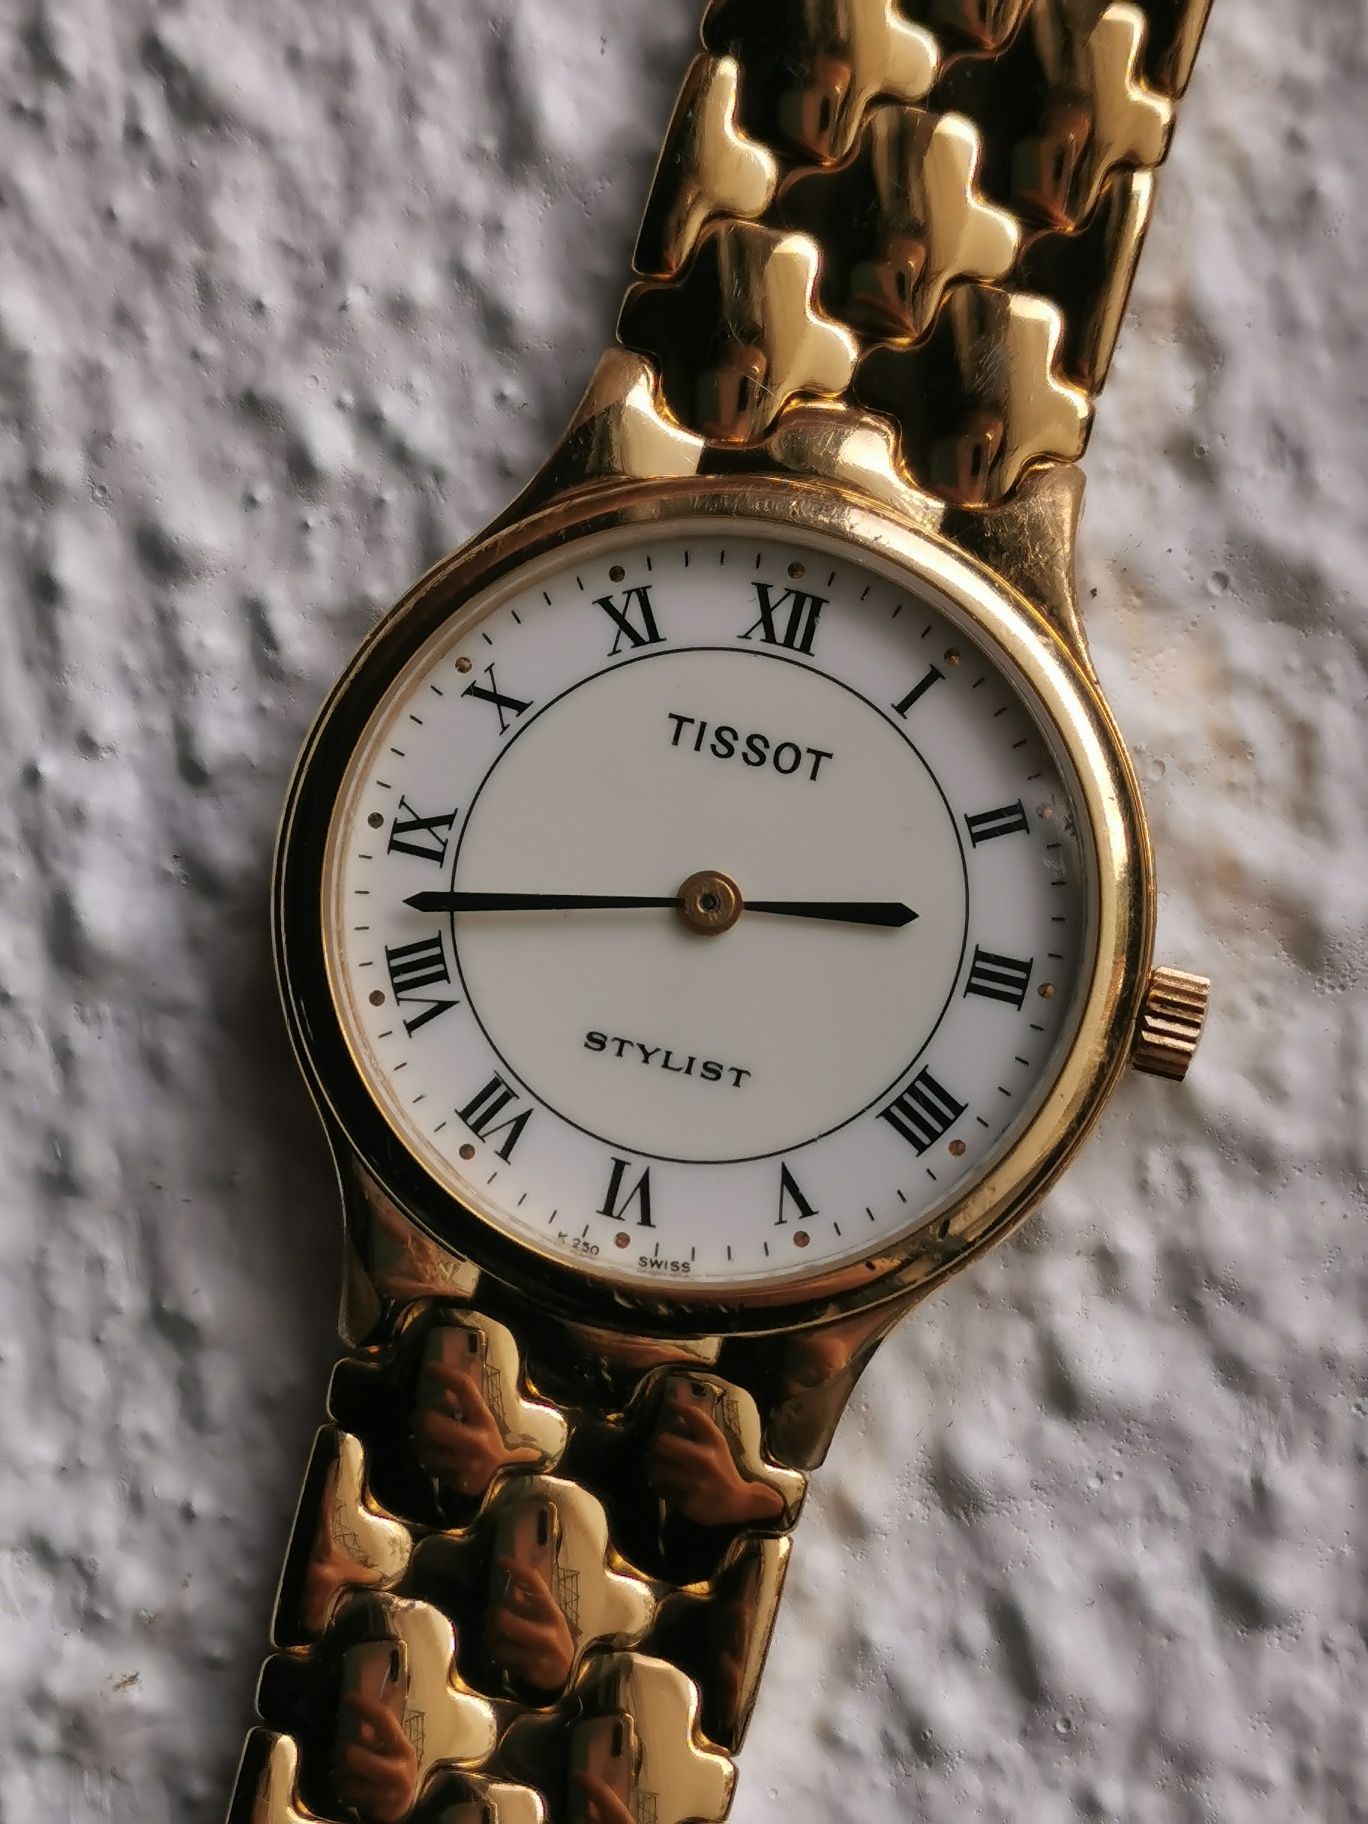 Relógio Tissot Stylist K250